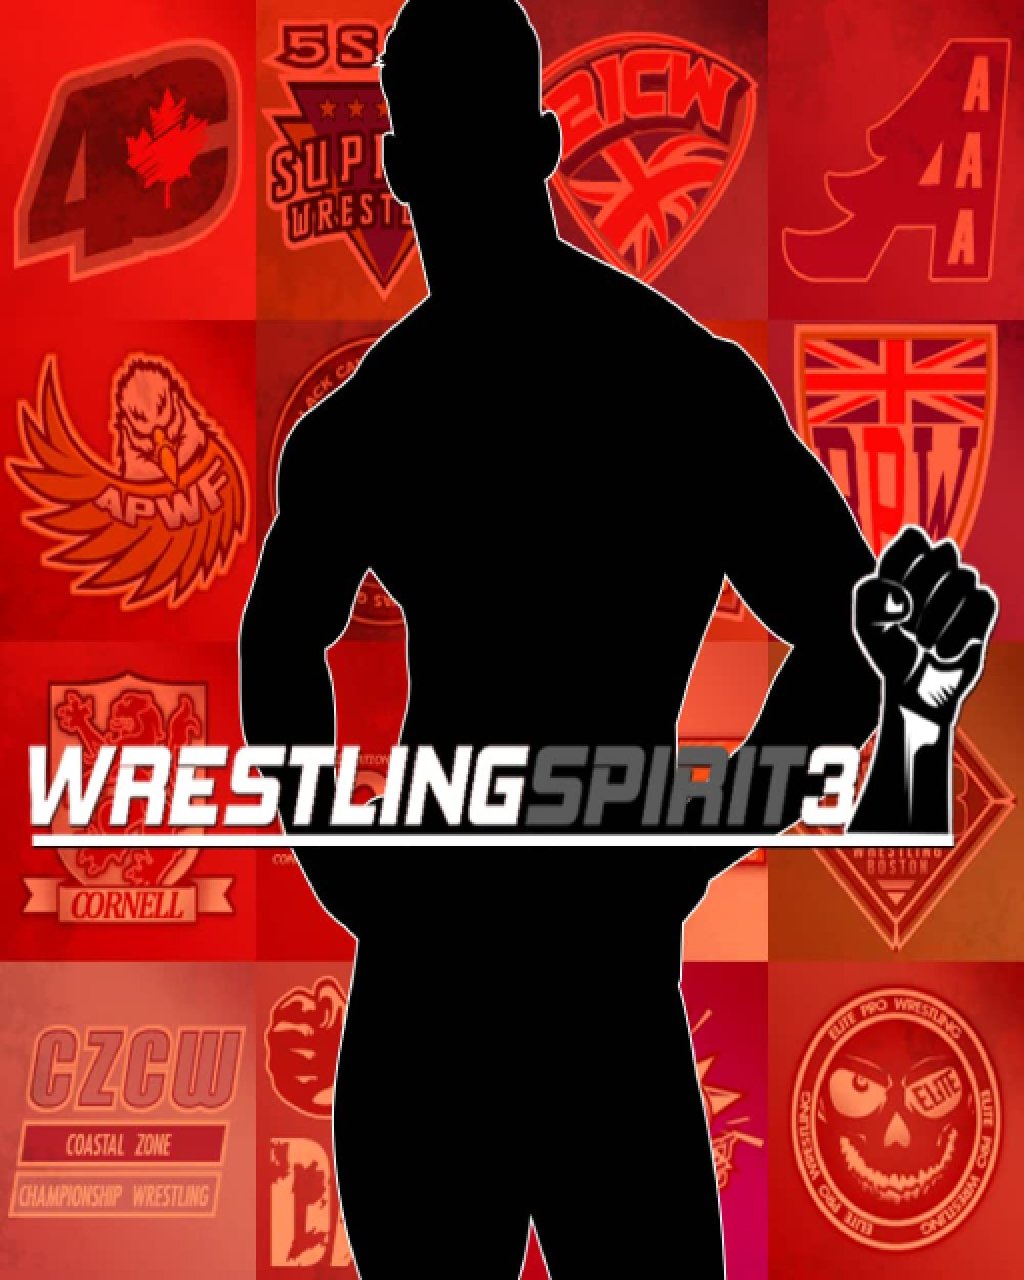 Wrestling Spirit 3